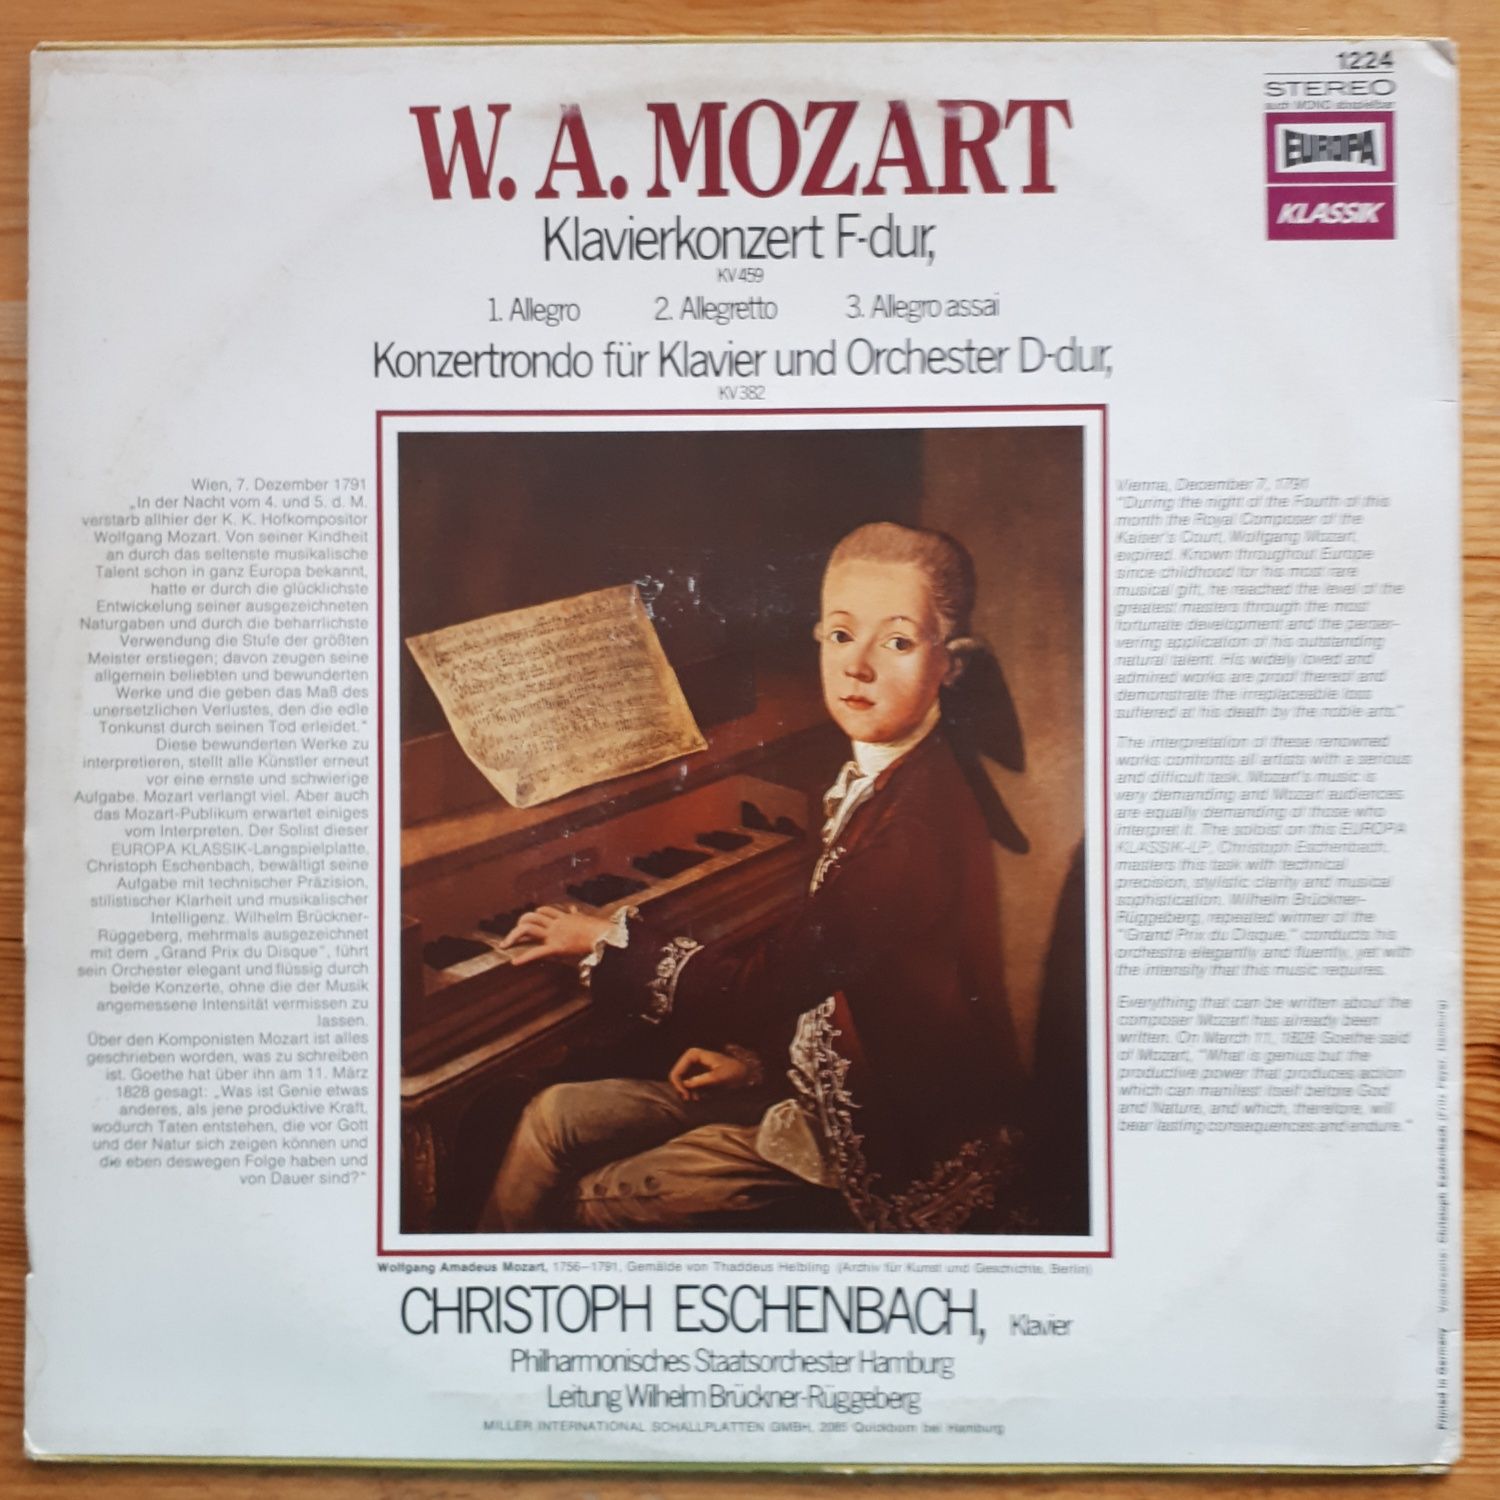 Płyta winyłowa - W. A. Mozart, LP, Stereo, EX+/EX-